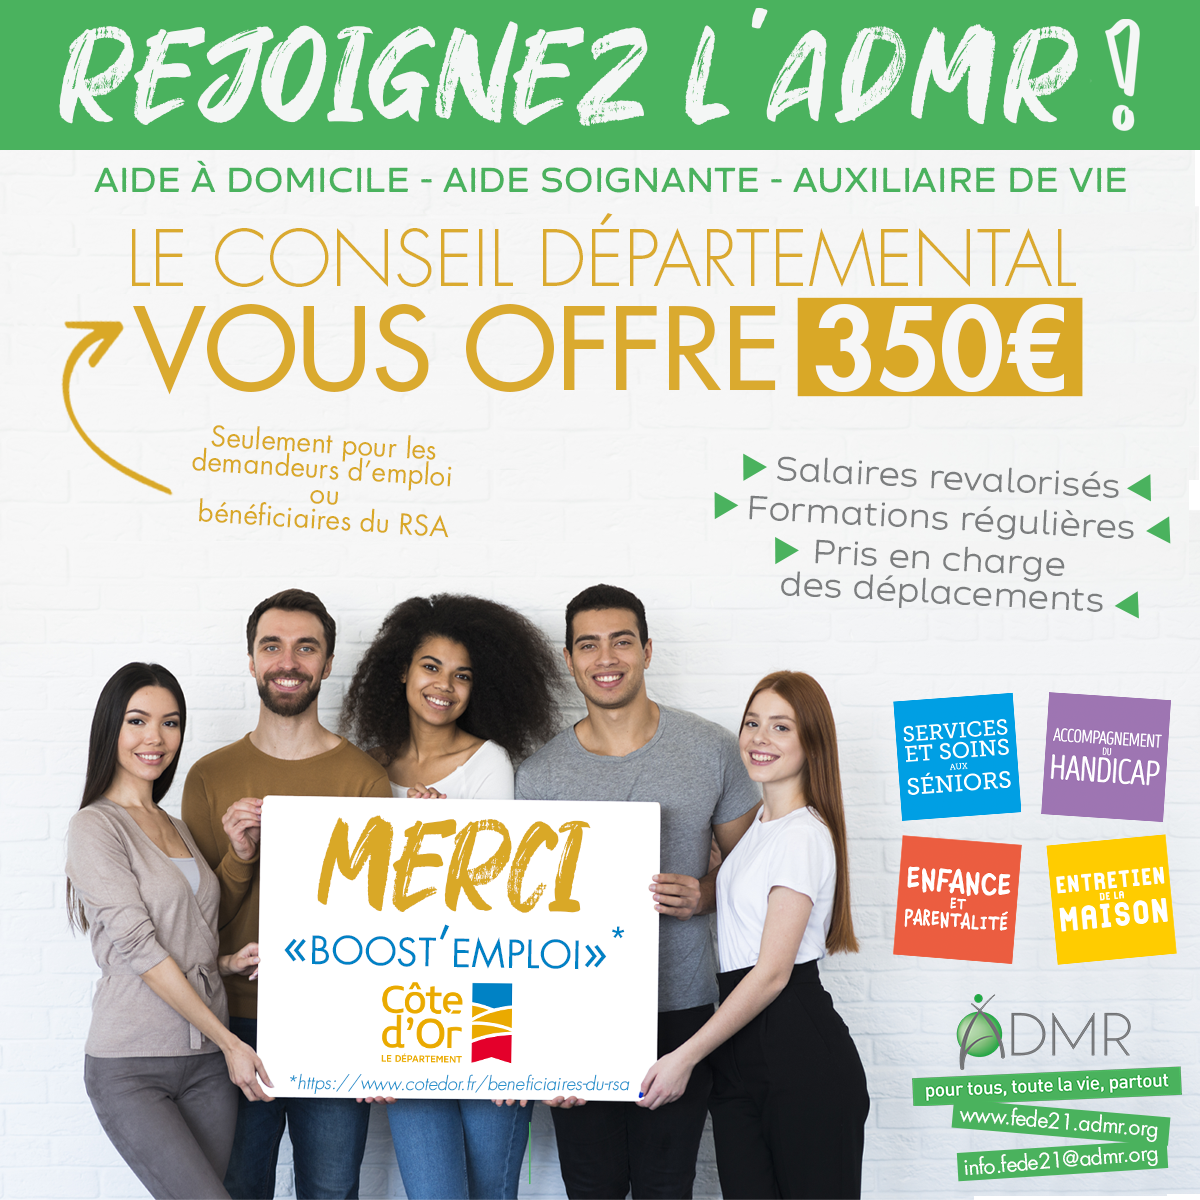 Rejoignez l'ADMR et gagnez 350 euros du département de Côte d'or